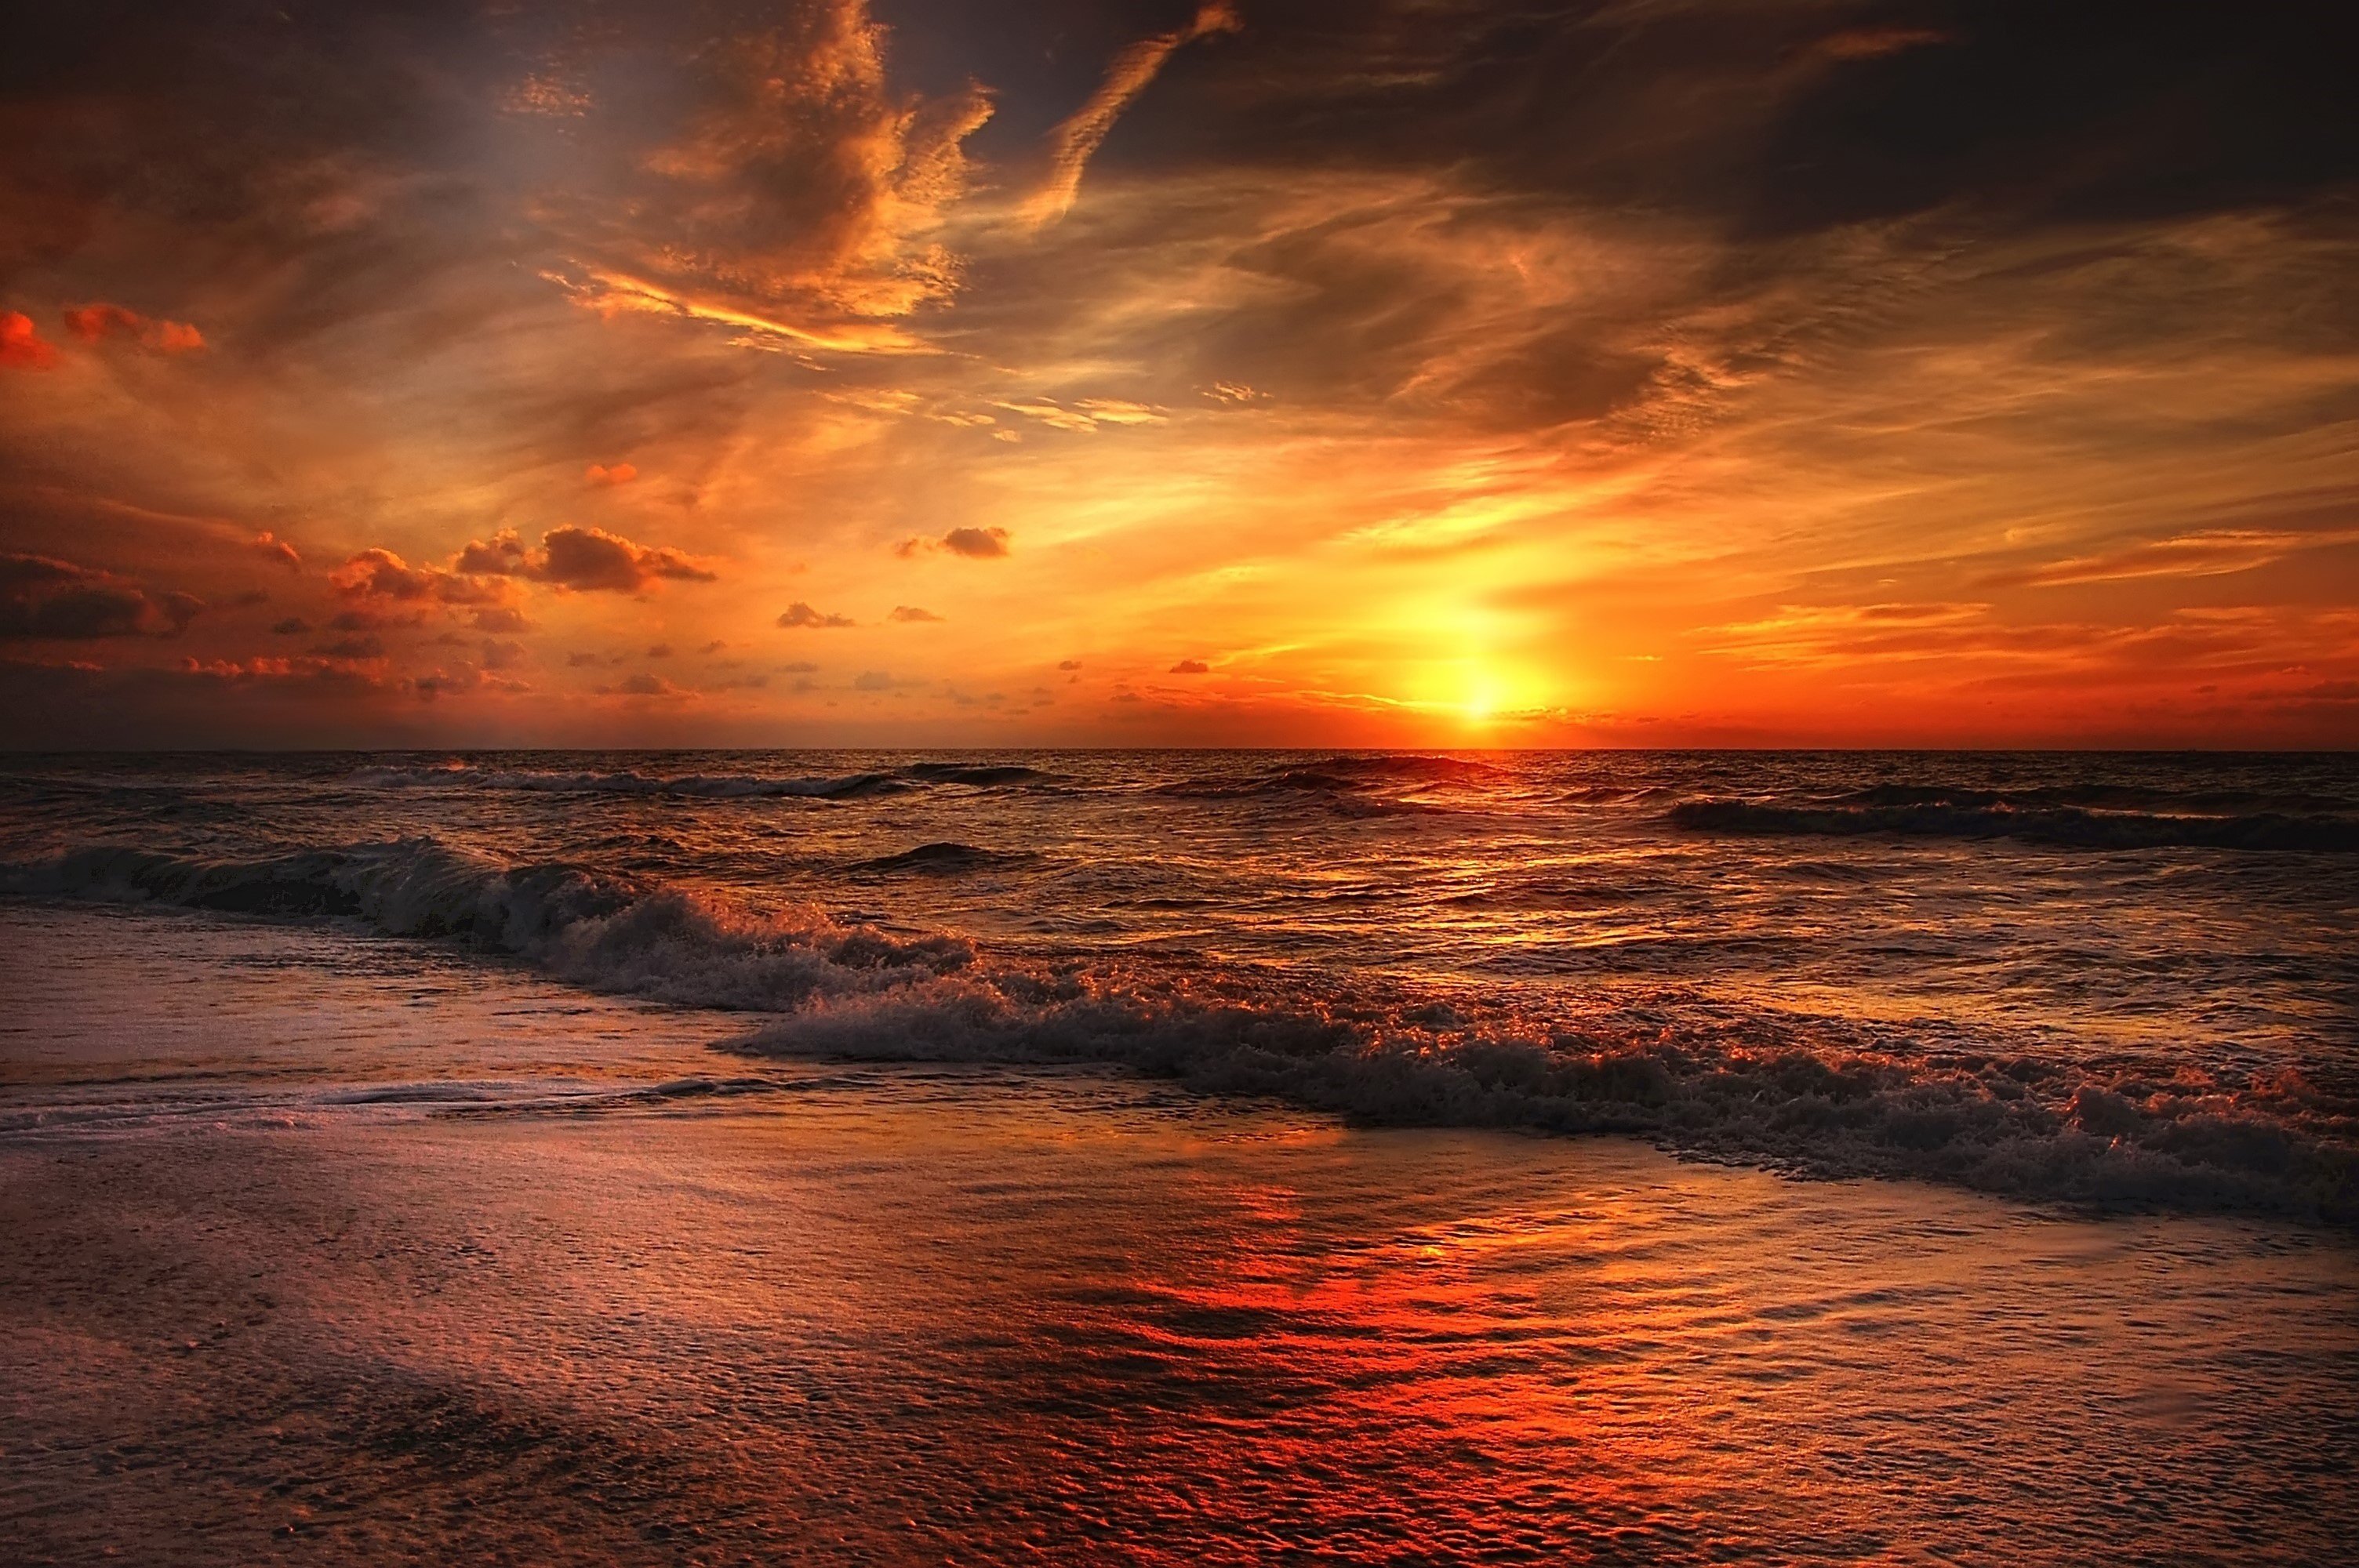 Sunset Beach 1024x768 Resolution HD 4k Wallpaper, Image